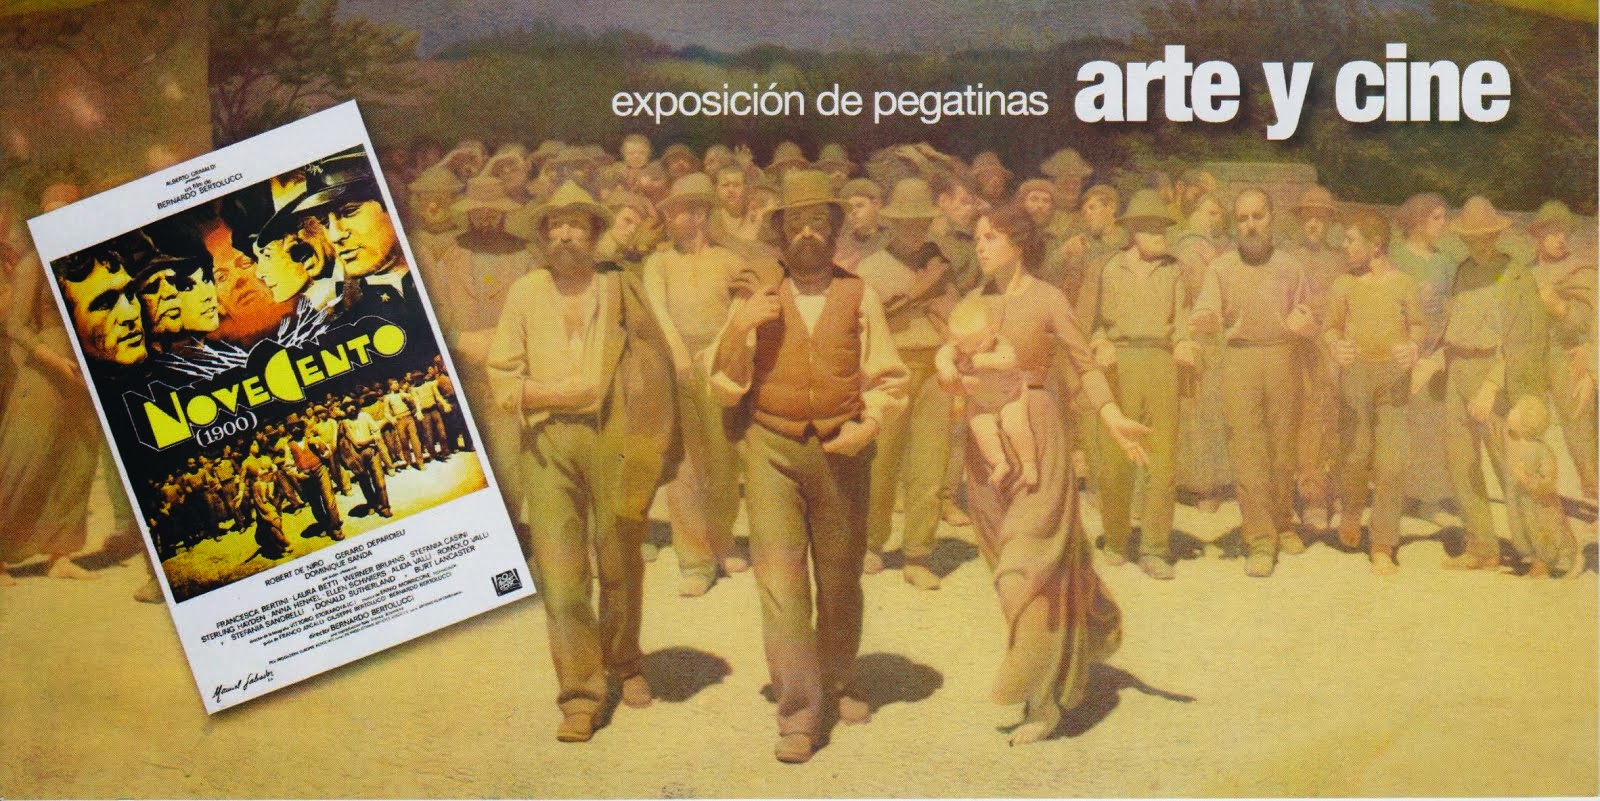 EXPOSICION DE PEGATINAS ARTE Y CINE: NOVECENTO